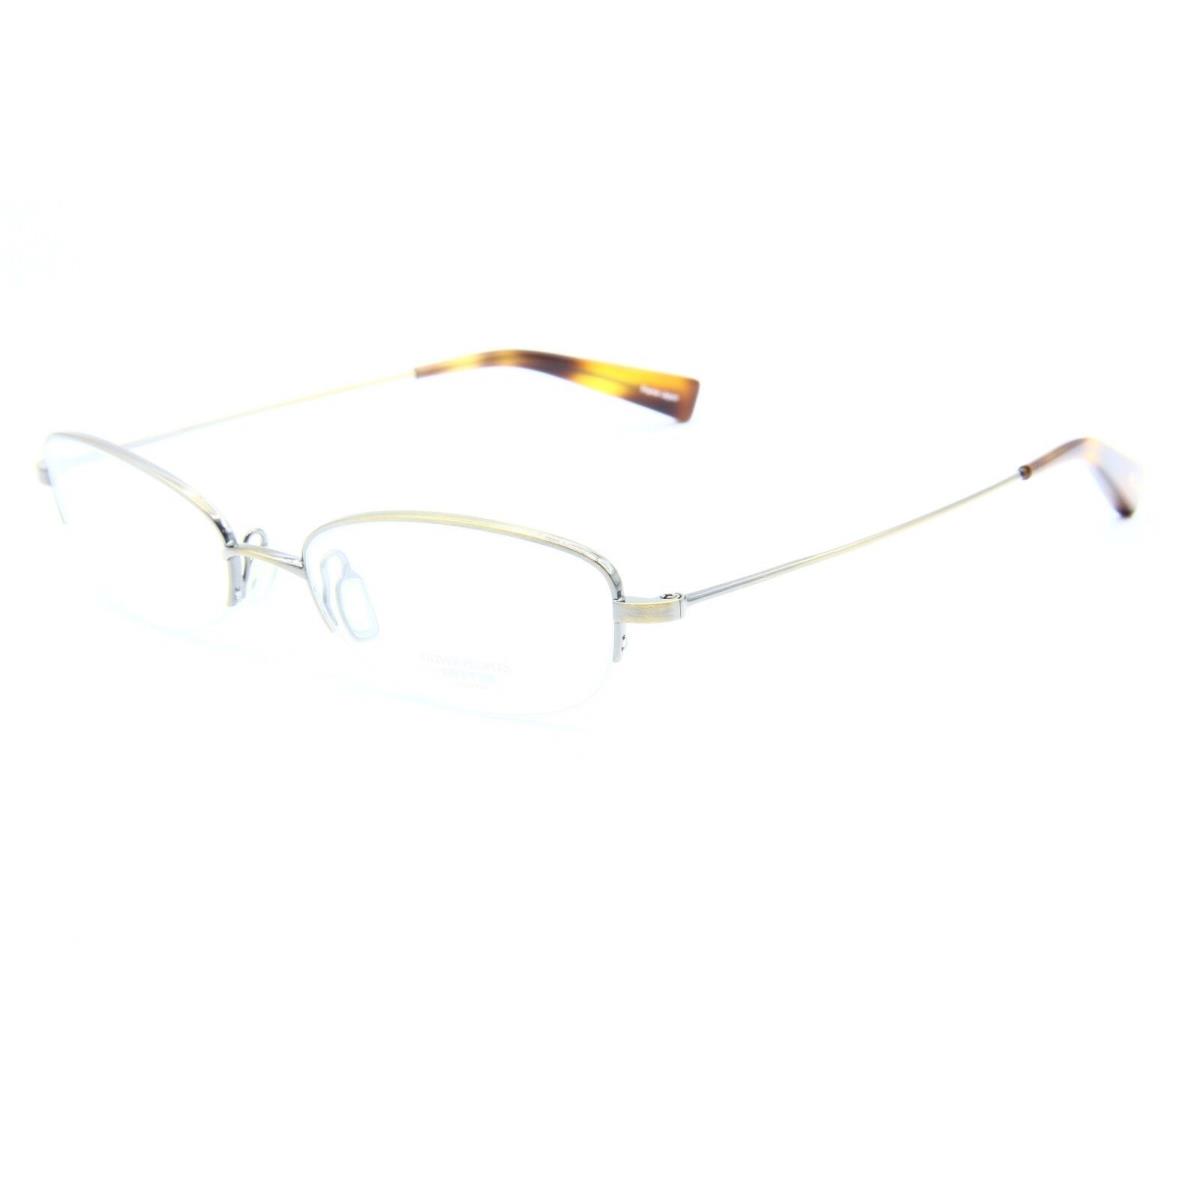 Oliver Peoples Georgina AG Gold Eyeglasses Frame 50-17